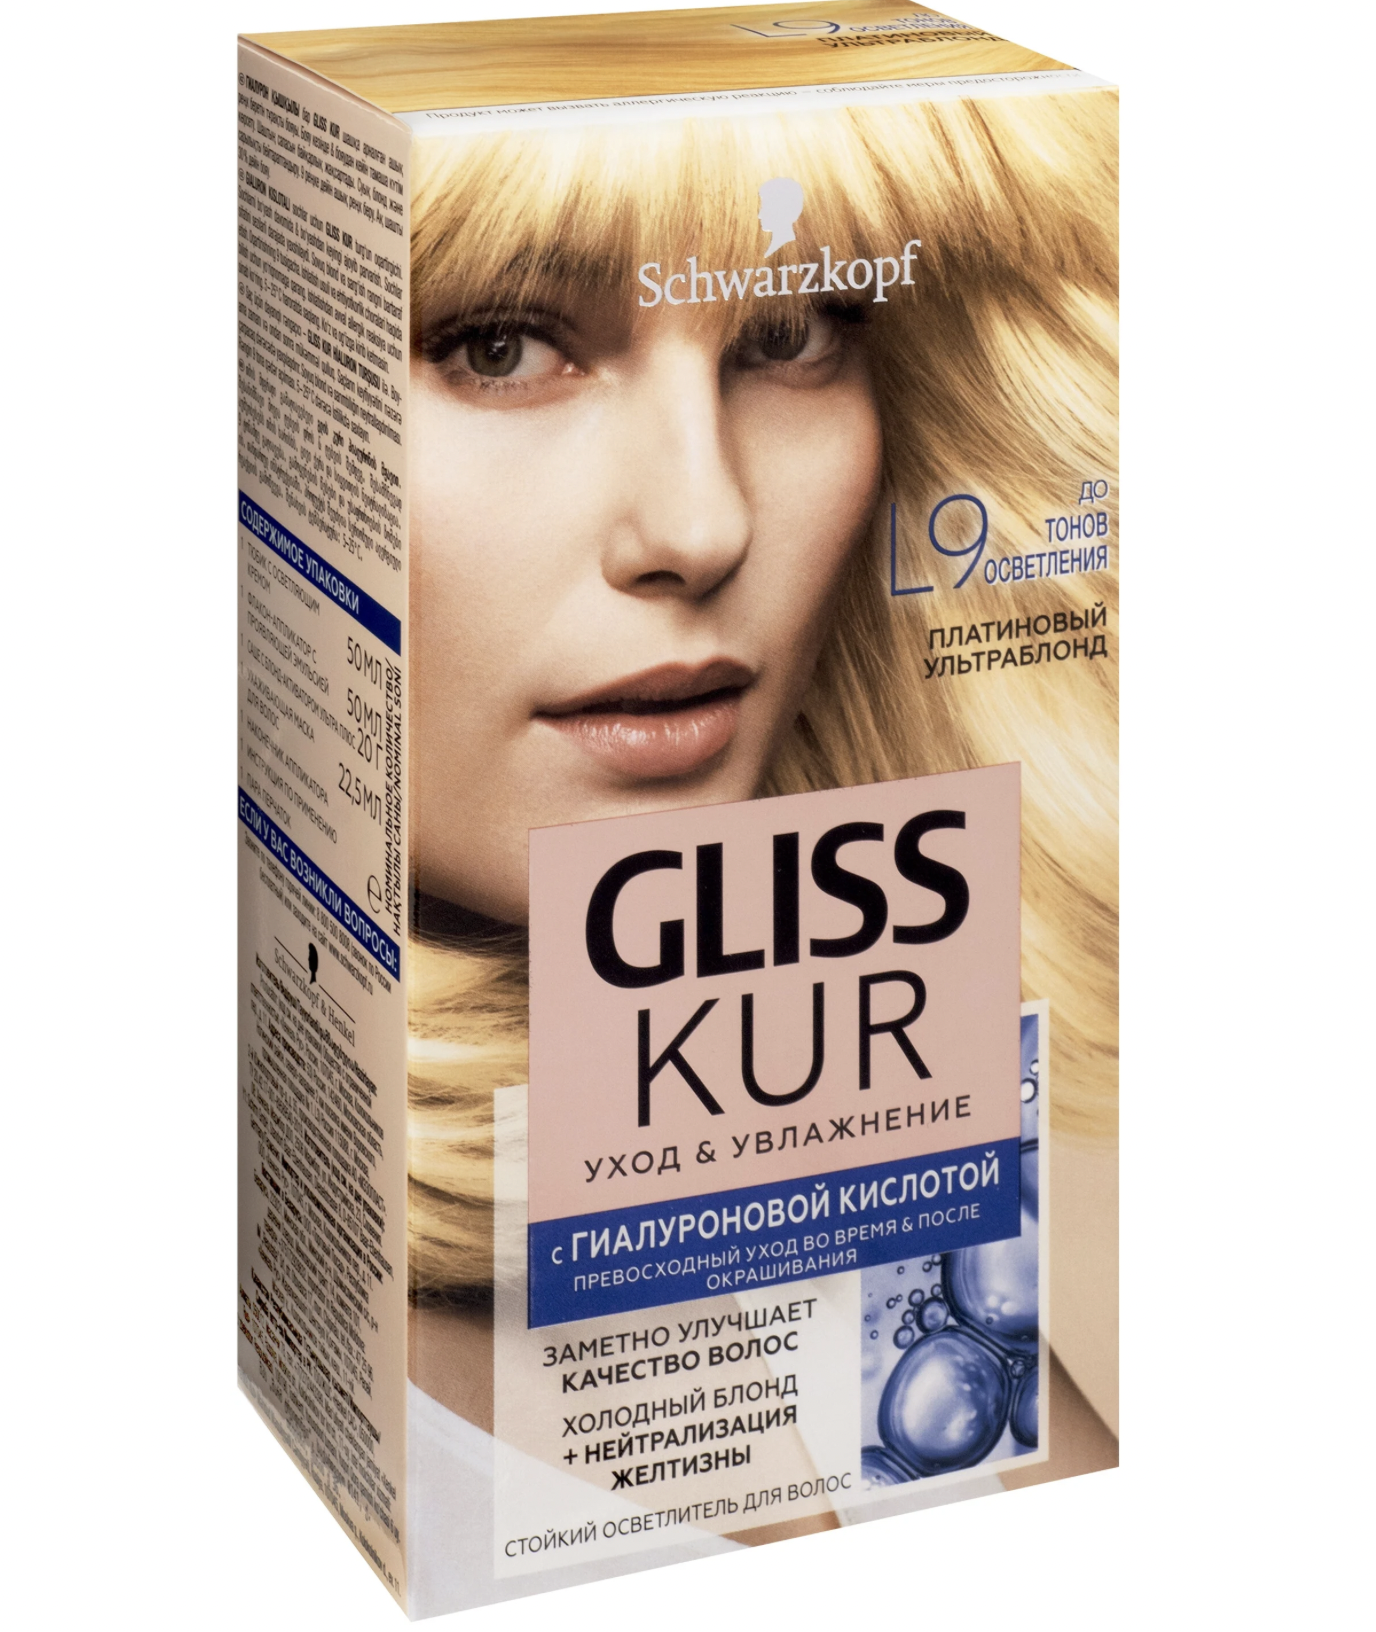 Краска для волос глисс кур. Schwarzkopf Gliss Kur краска. Gliss Kur краска 9.0. Платиновый блонд глис кур краска платиновый. Краска глисс кур 9.2.